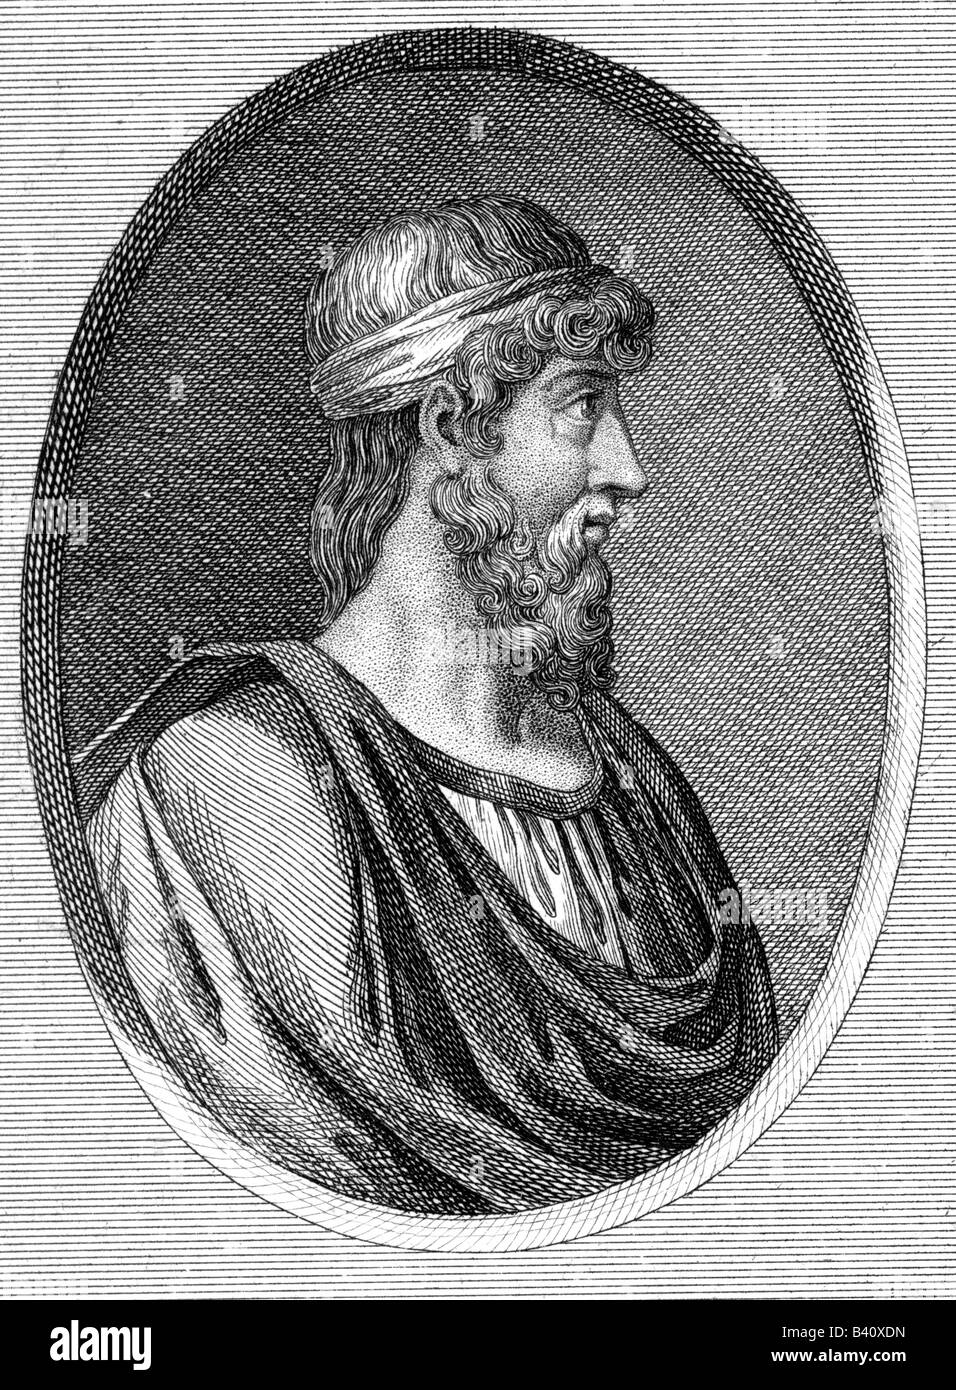 Plato, 427 v. Chr. - 347 v. Chr., griechischer Philosoph, Porträt, Kupferstich, 18. Jahrhundert, Artist's Urheberrecht nicht gelöscht werden Stockfoto